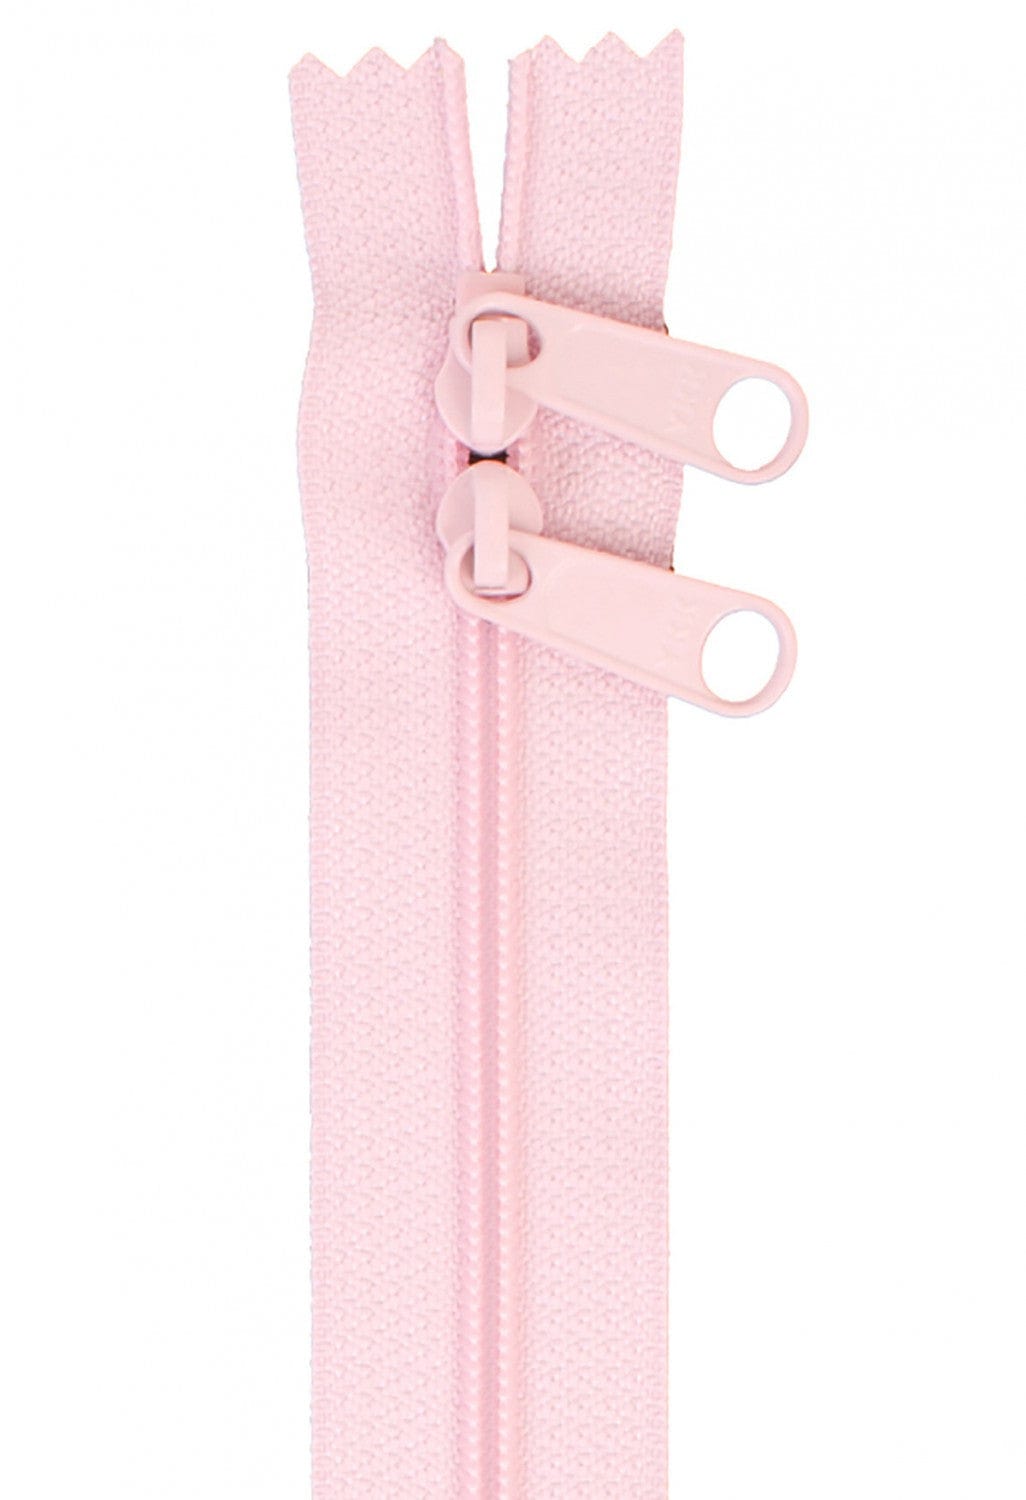 30" Long Double Slide Handbag Zipper in Pale Pink